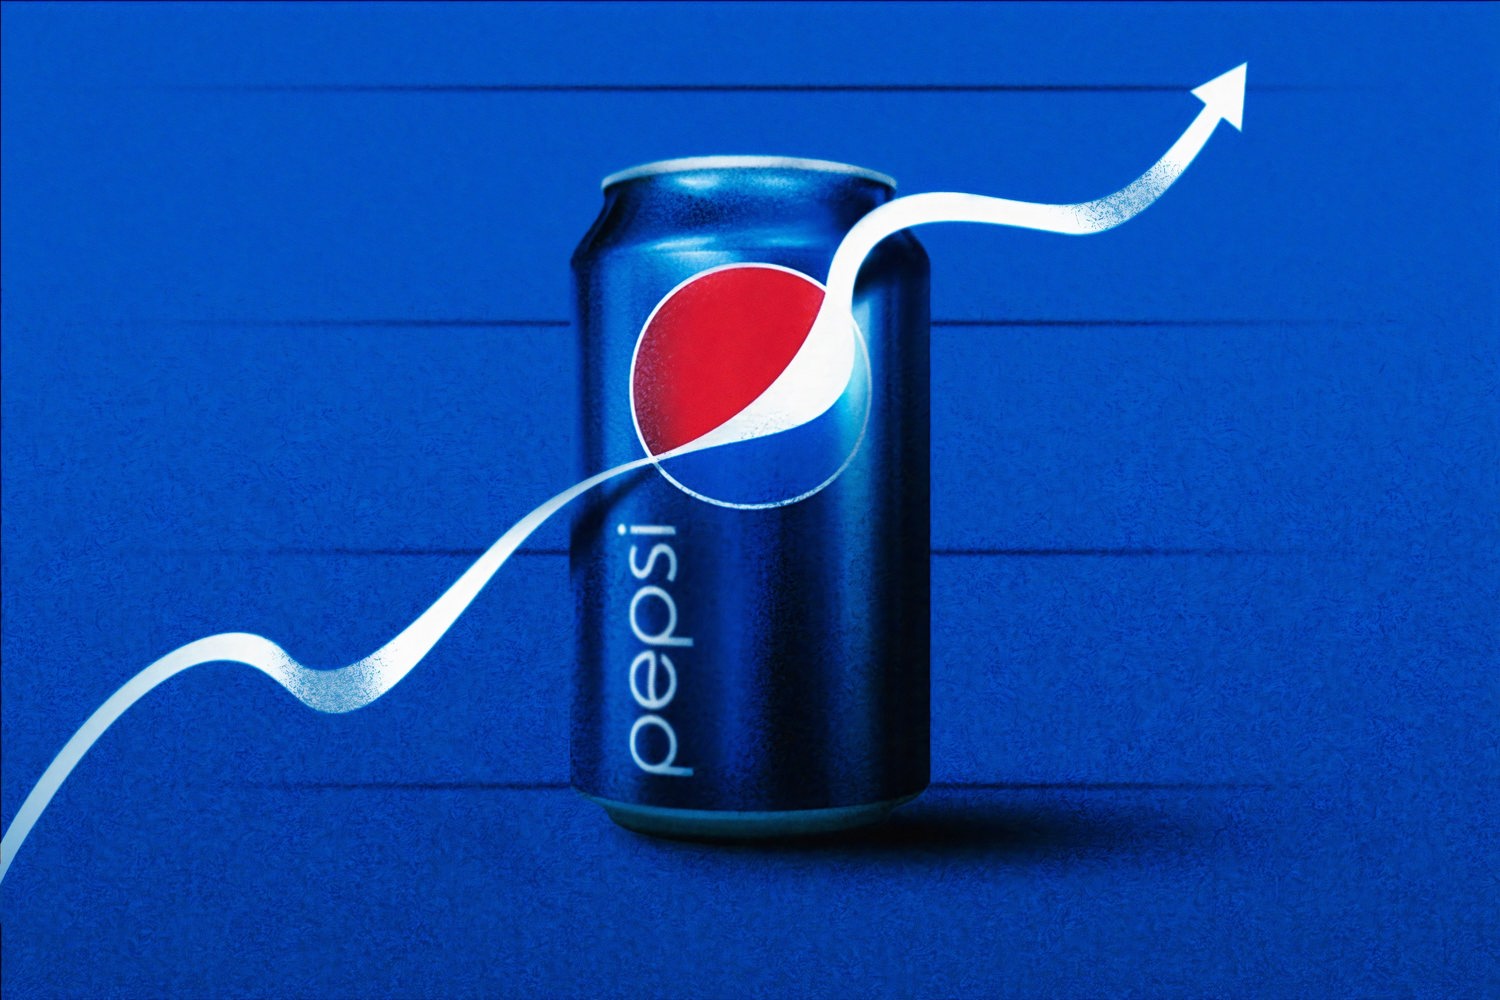 Pepsi PEP stock news and analysis